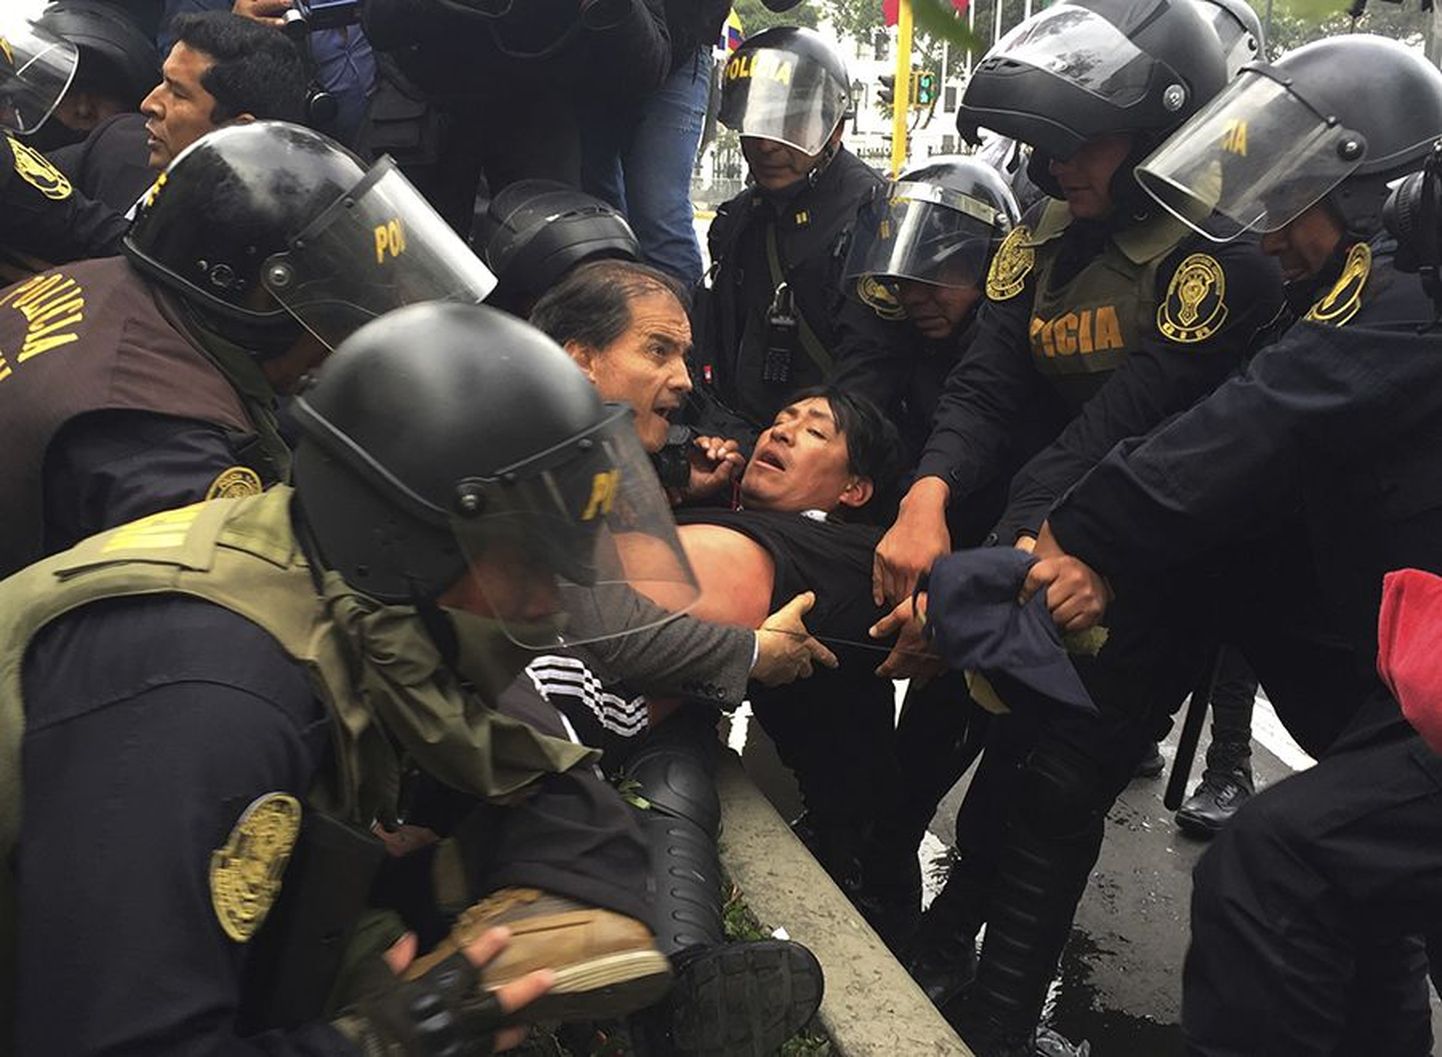 Peruulased on tuntud oma protestivaimu poolest. Tänavu raputasid riiki õpetajate meeleavaldused, mille järellainetused pole seniajani vaibunud.